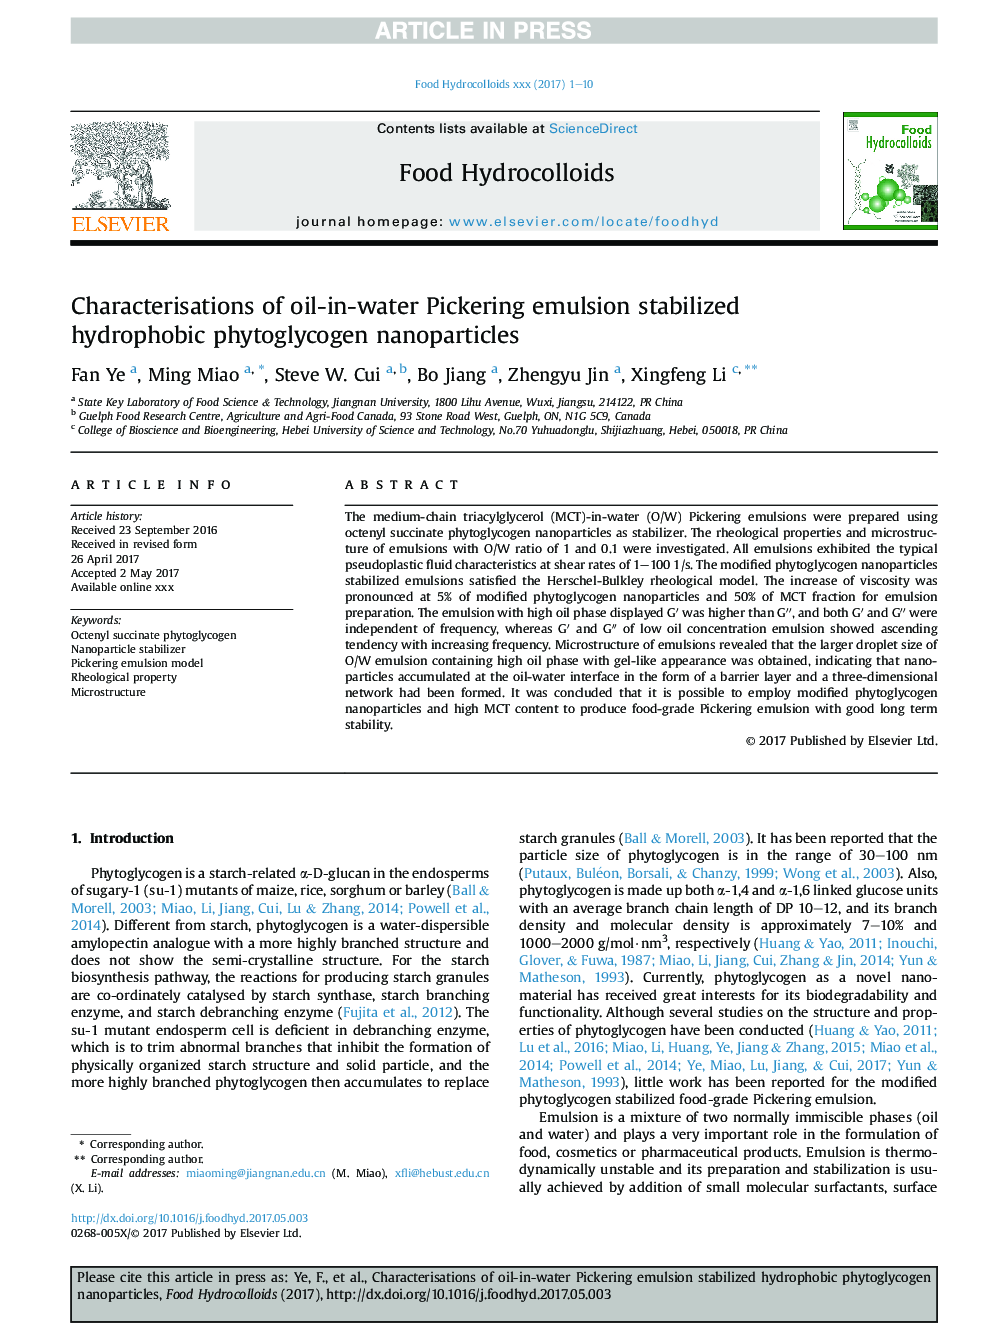 خصوصیات امولسیون پکینگینگ روغن در آب تثبیت نانوذرات فیتوگلیکوژن هیدروفوبیک 